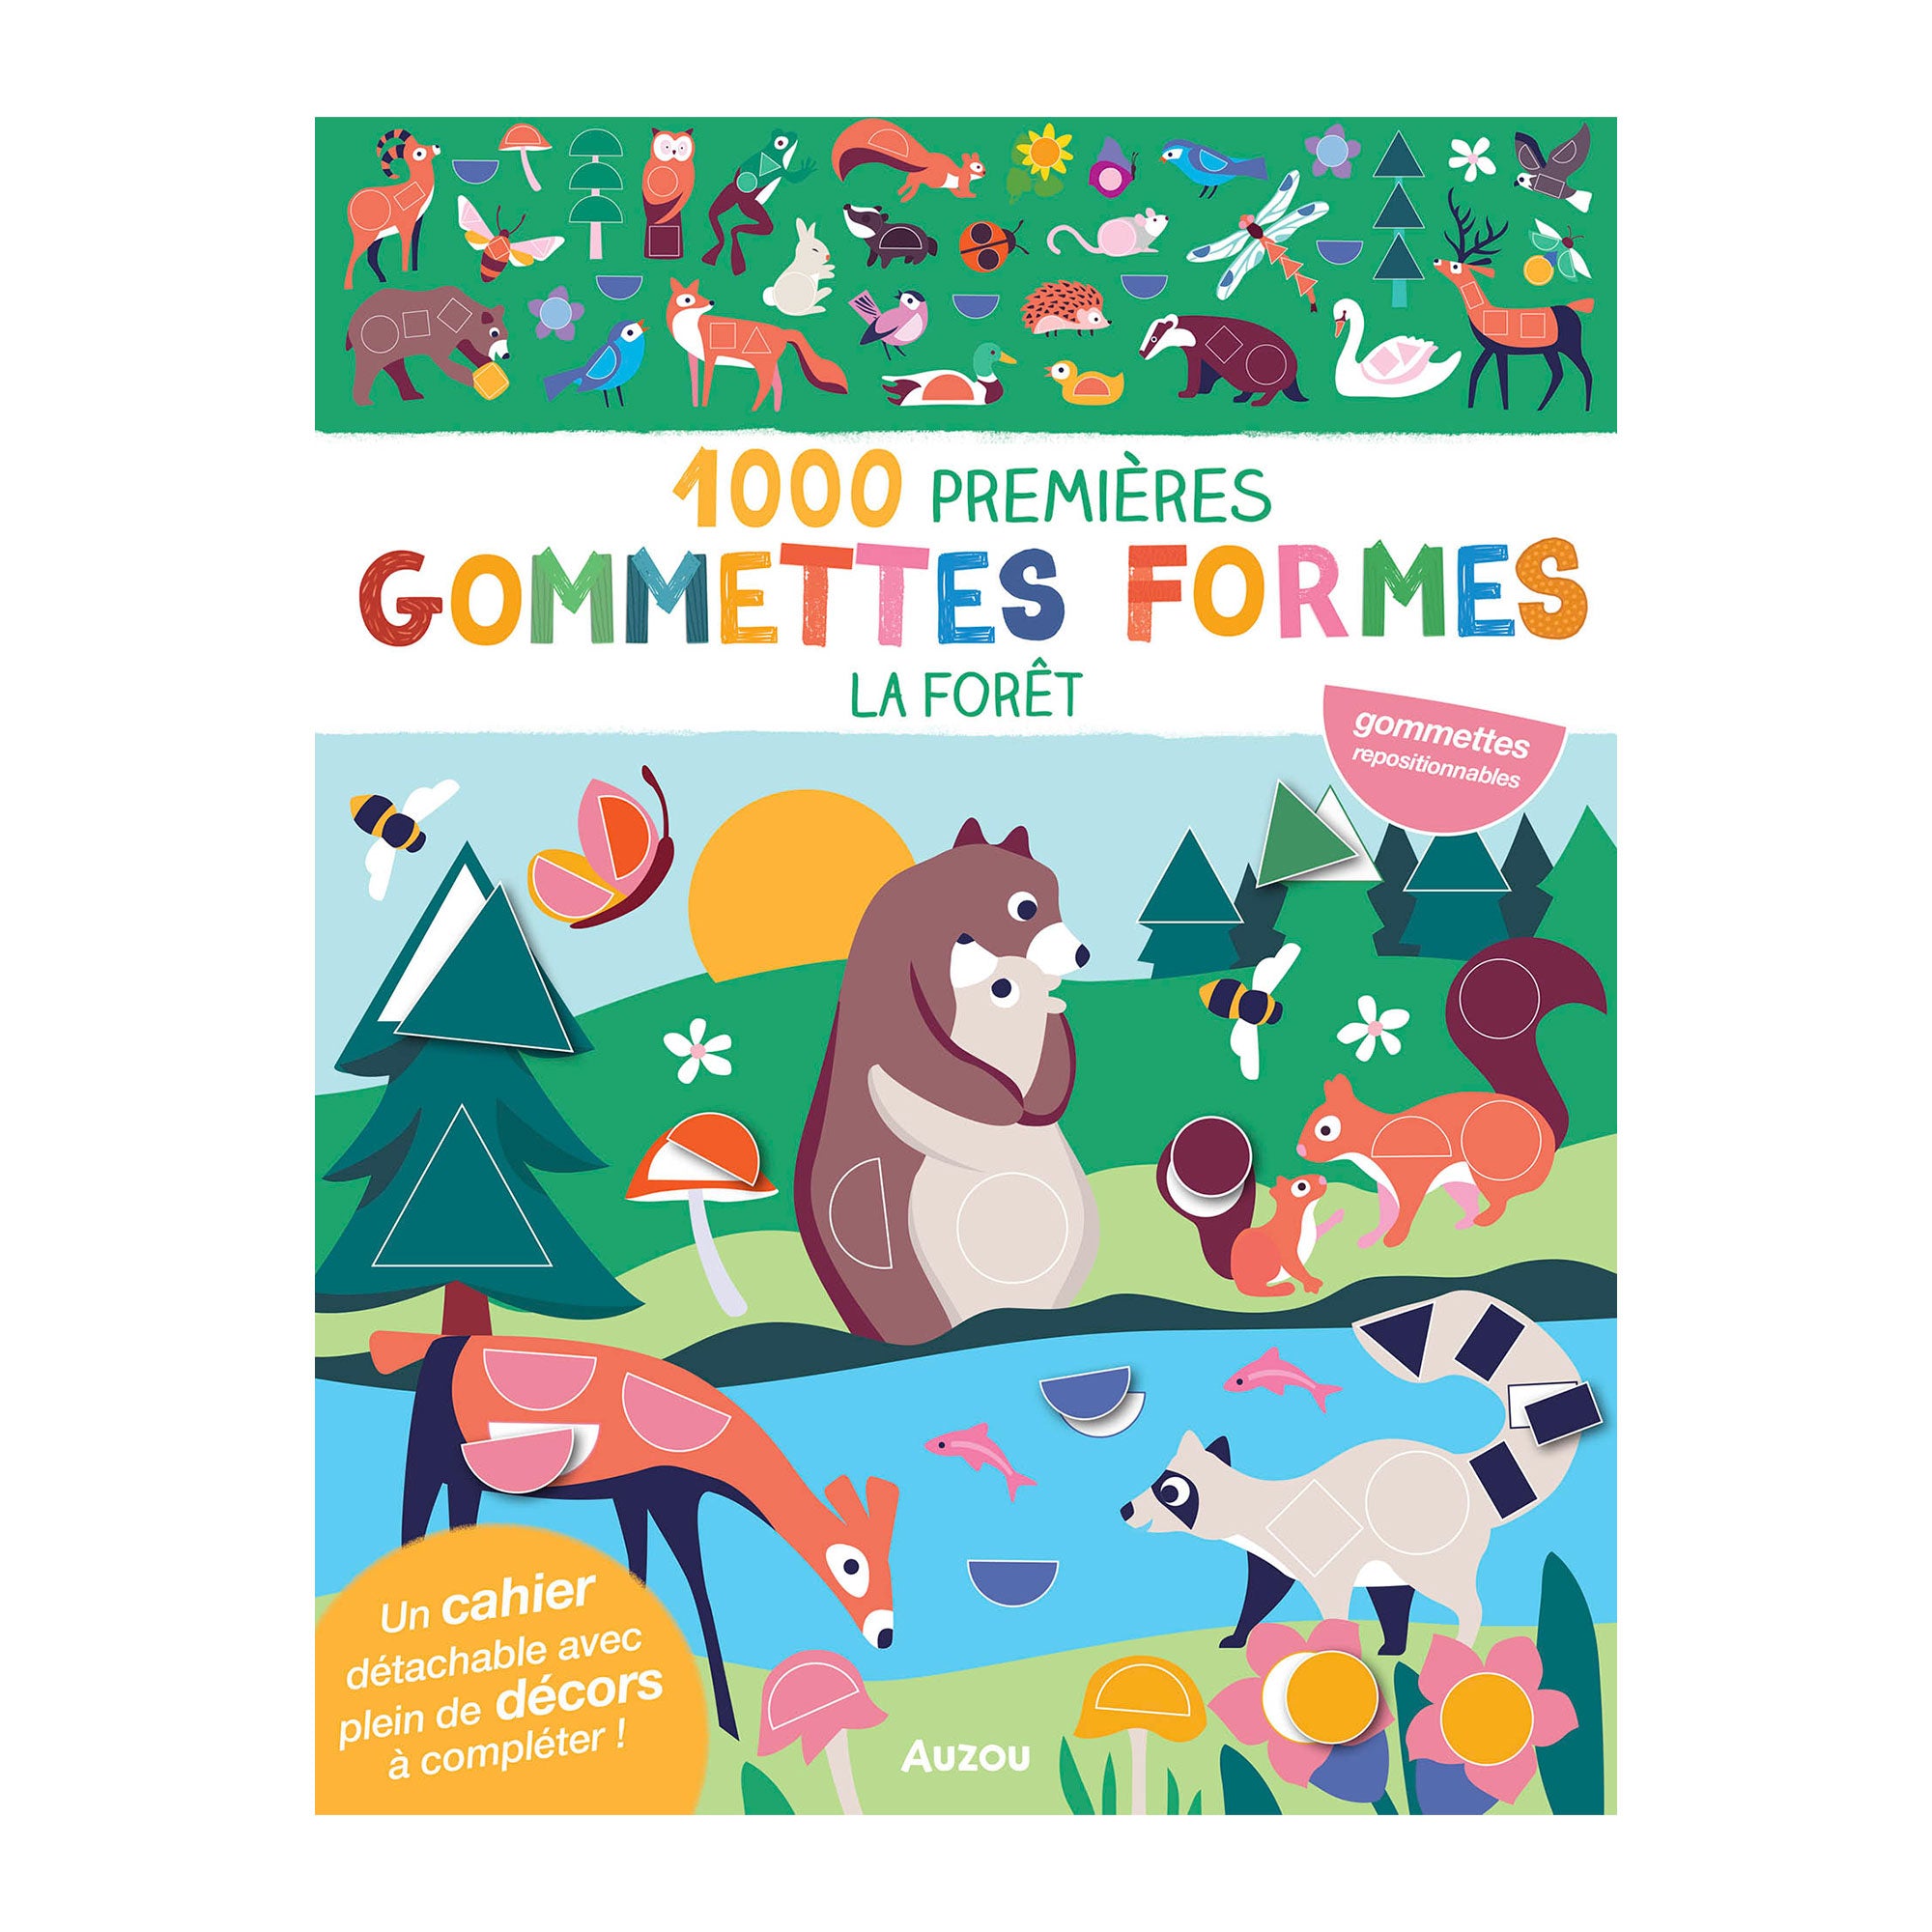 1000 premières gommettes formes : La forêt - French Ed.